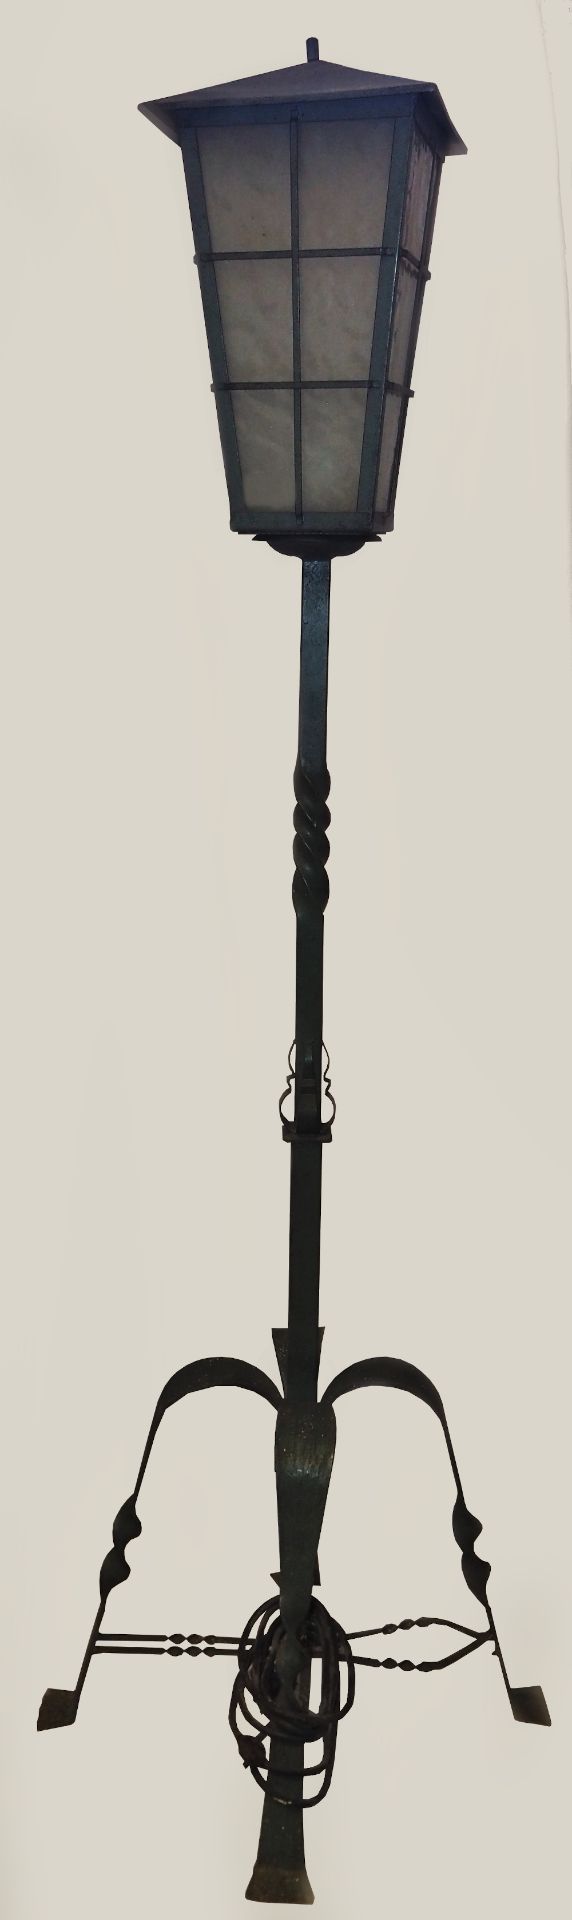 1 Stehlampe 20. Jh. Eisen Gestell mit 4 Füßen querverstrebt, 1-flammig, ca. H 190cm,